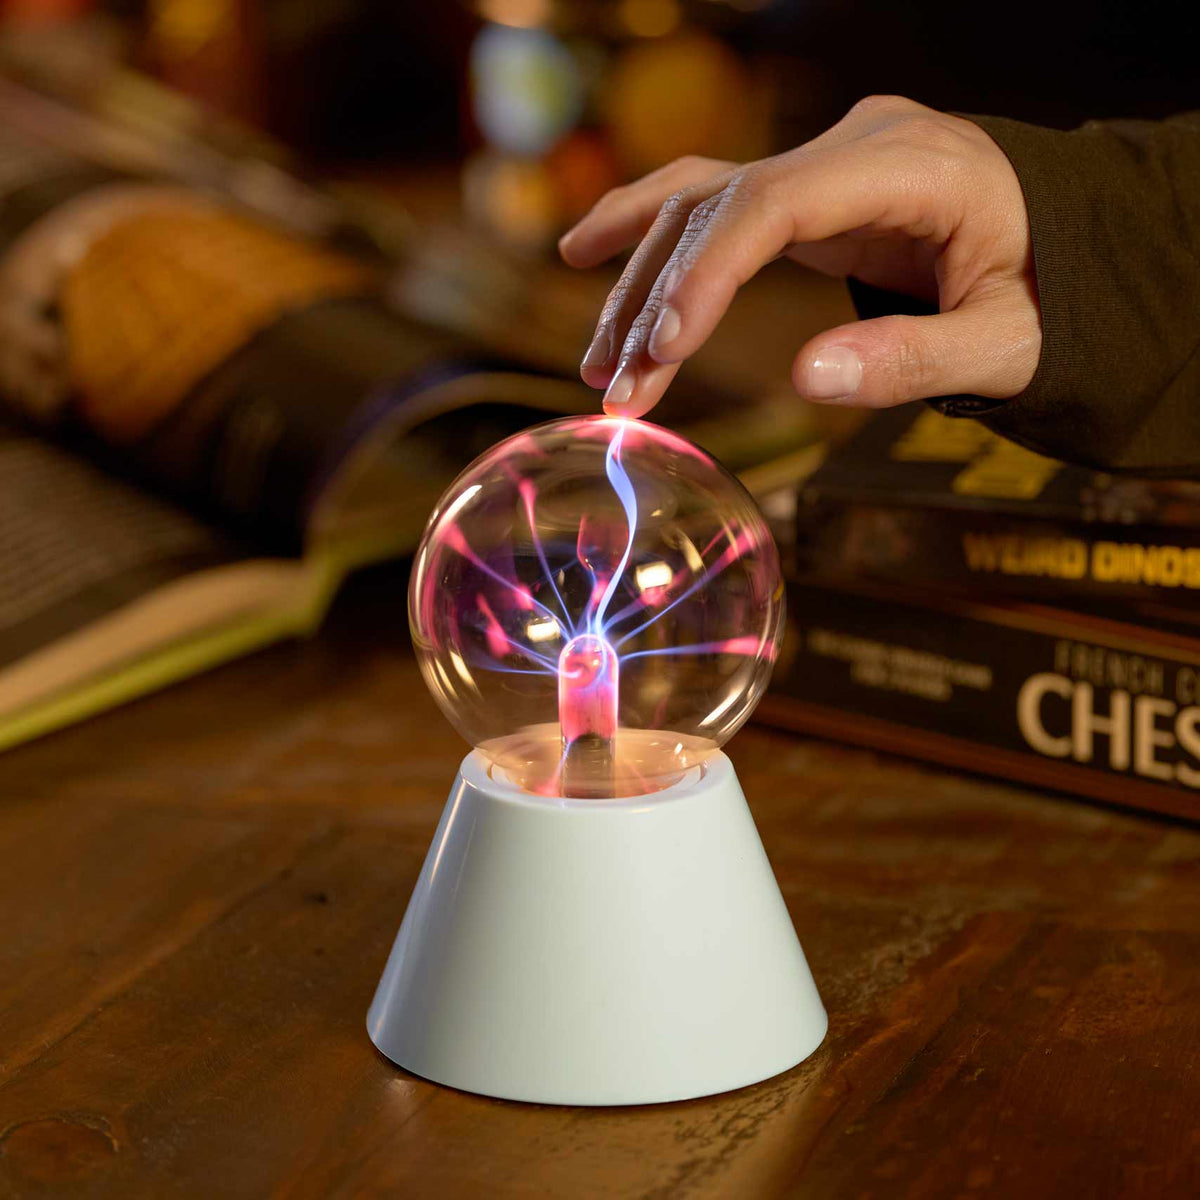 Lampe Plasmabol magique - Ampoule Tesla - Lampe Ball plasma sur socle -  Lampe Tesla